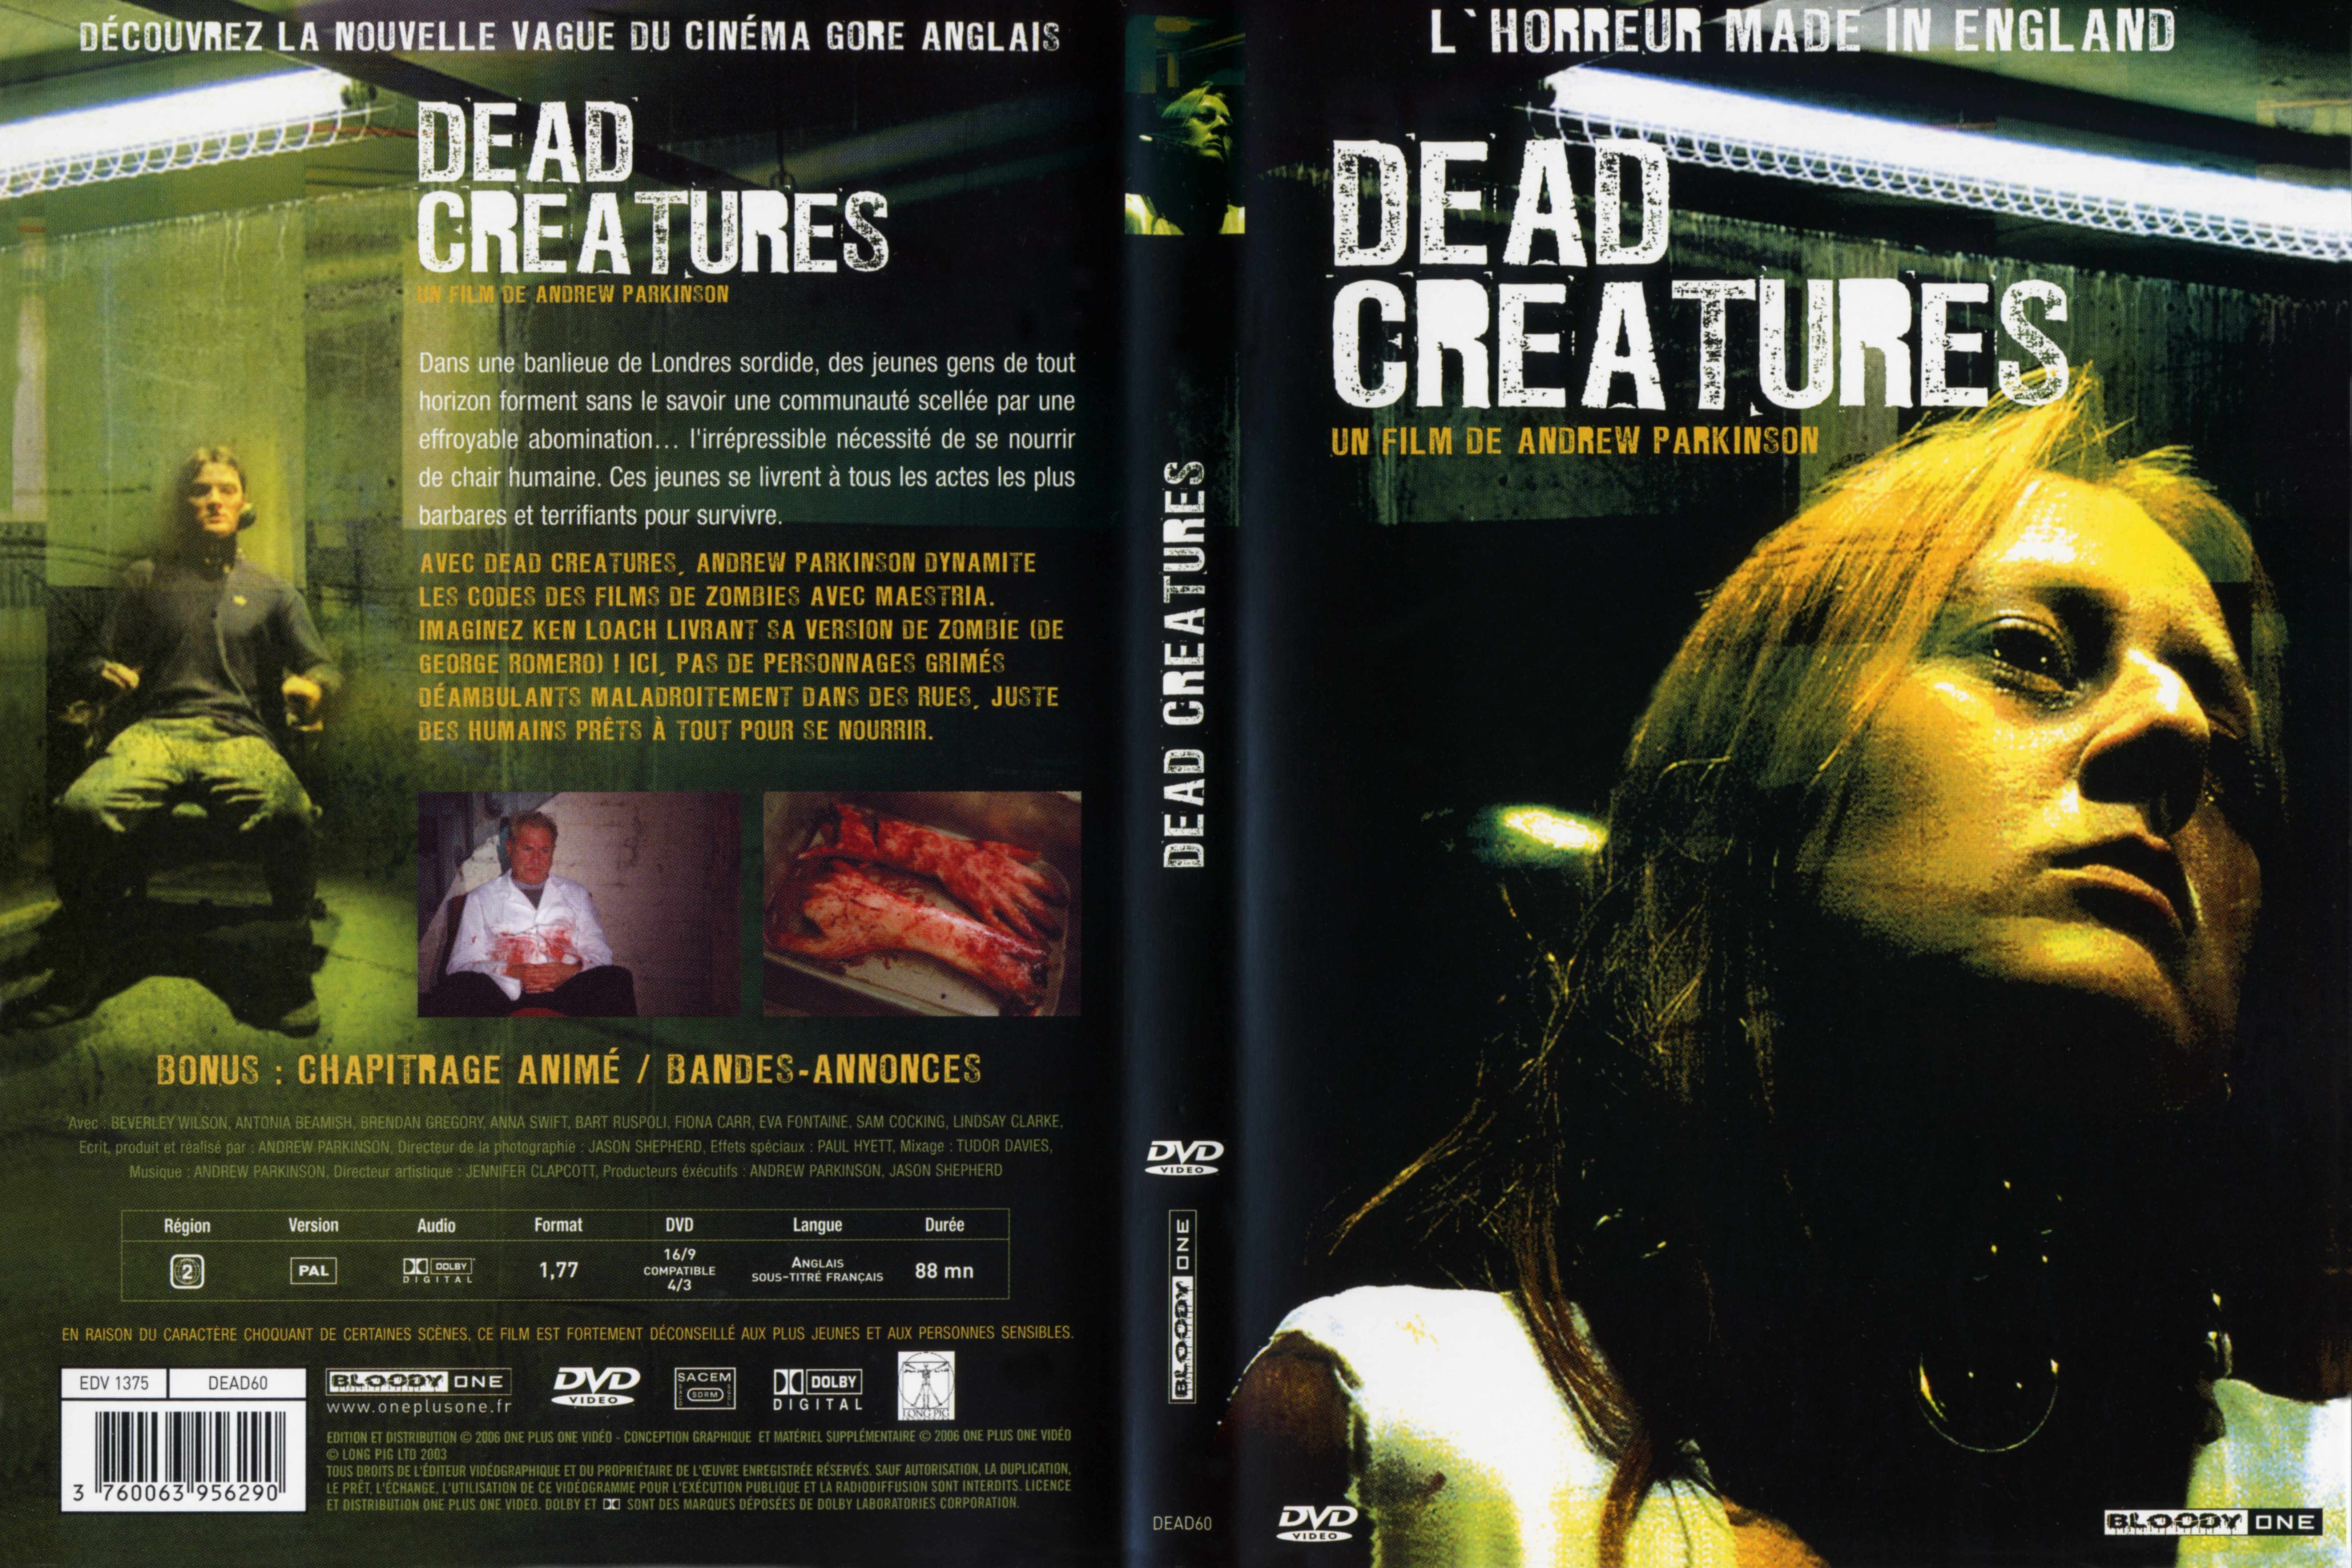 Jaquette DVD Dead creatures